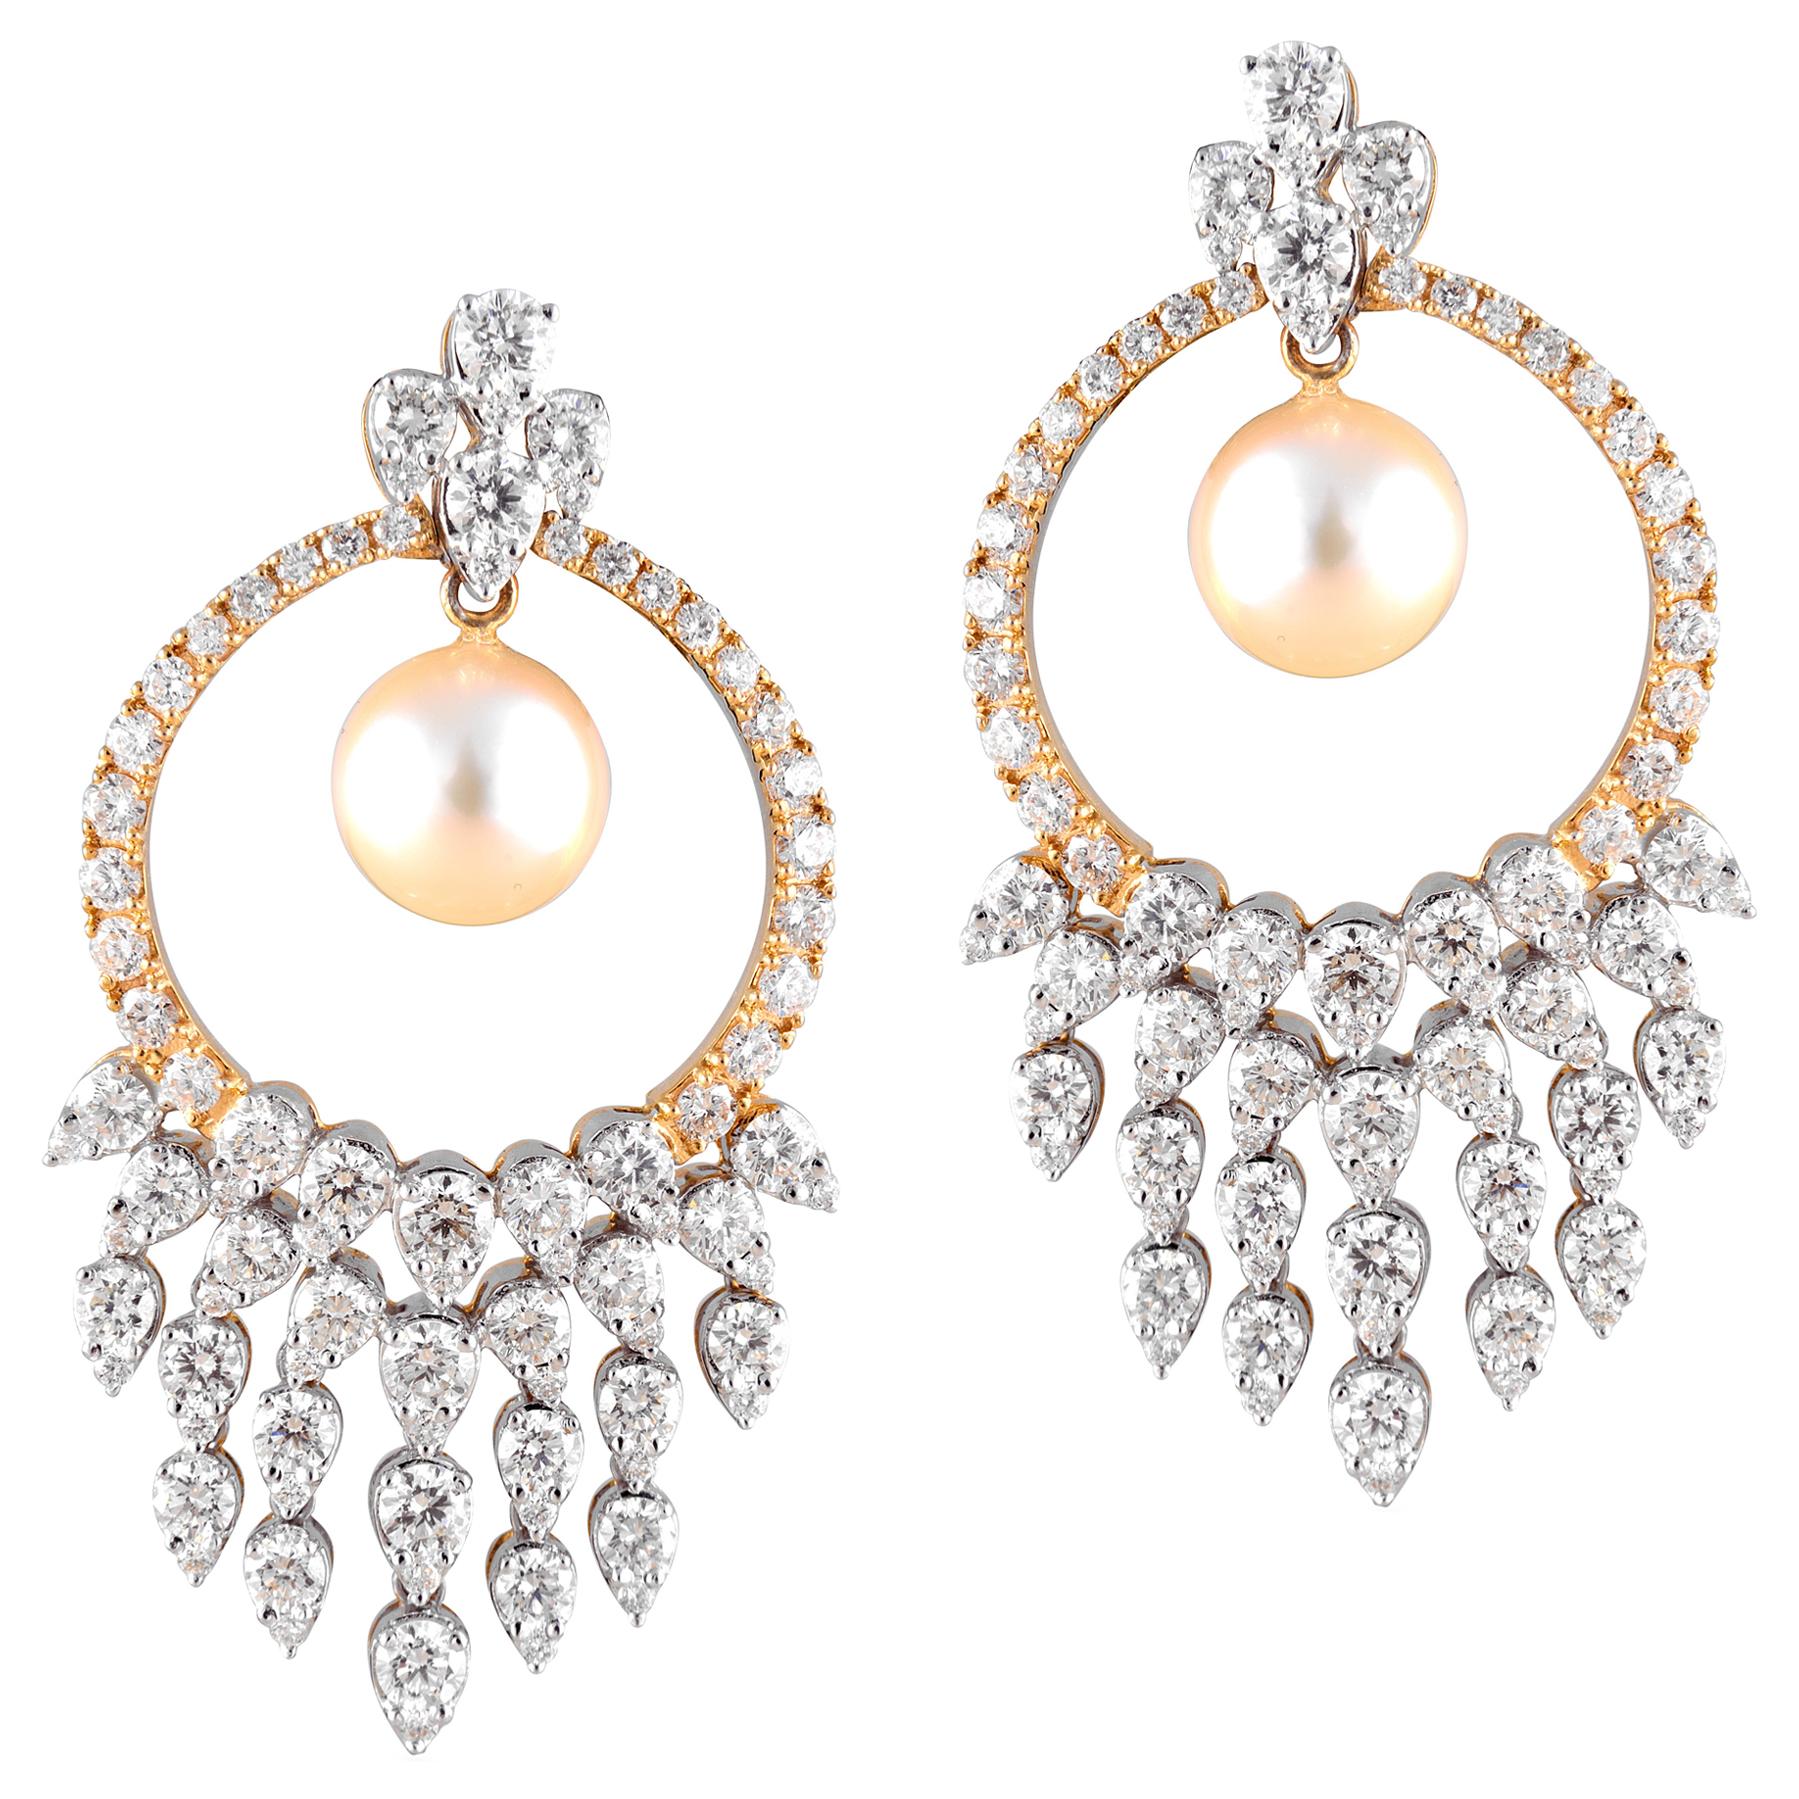 Boucles d'oreilles lustre en or jaune 18 carats, perles d'or blanc et diamants blancs